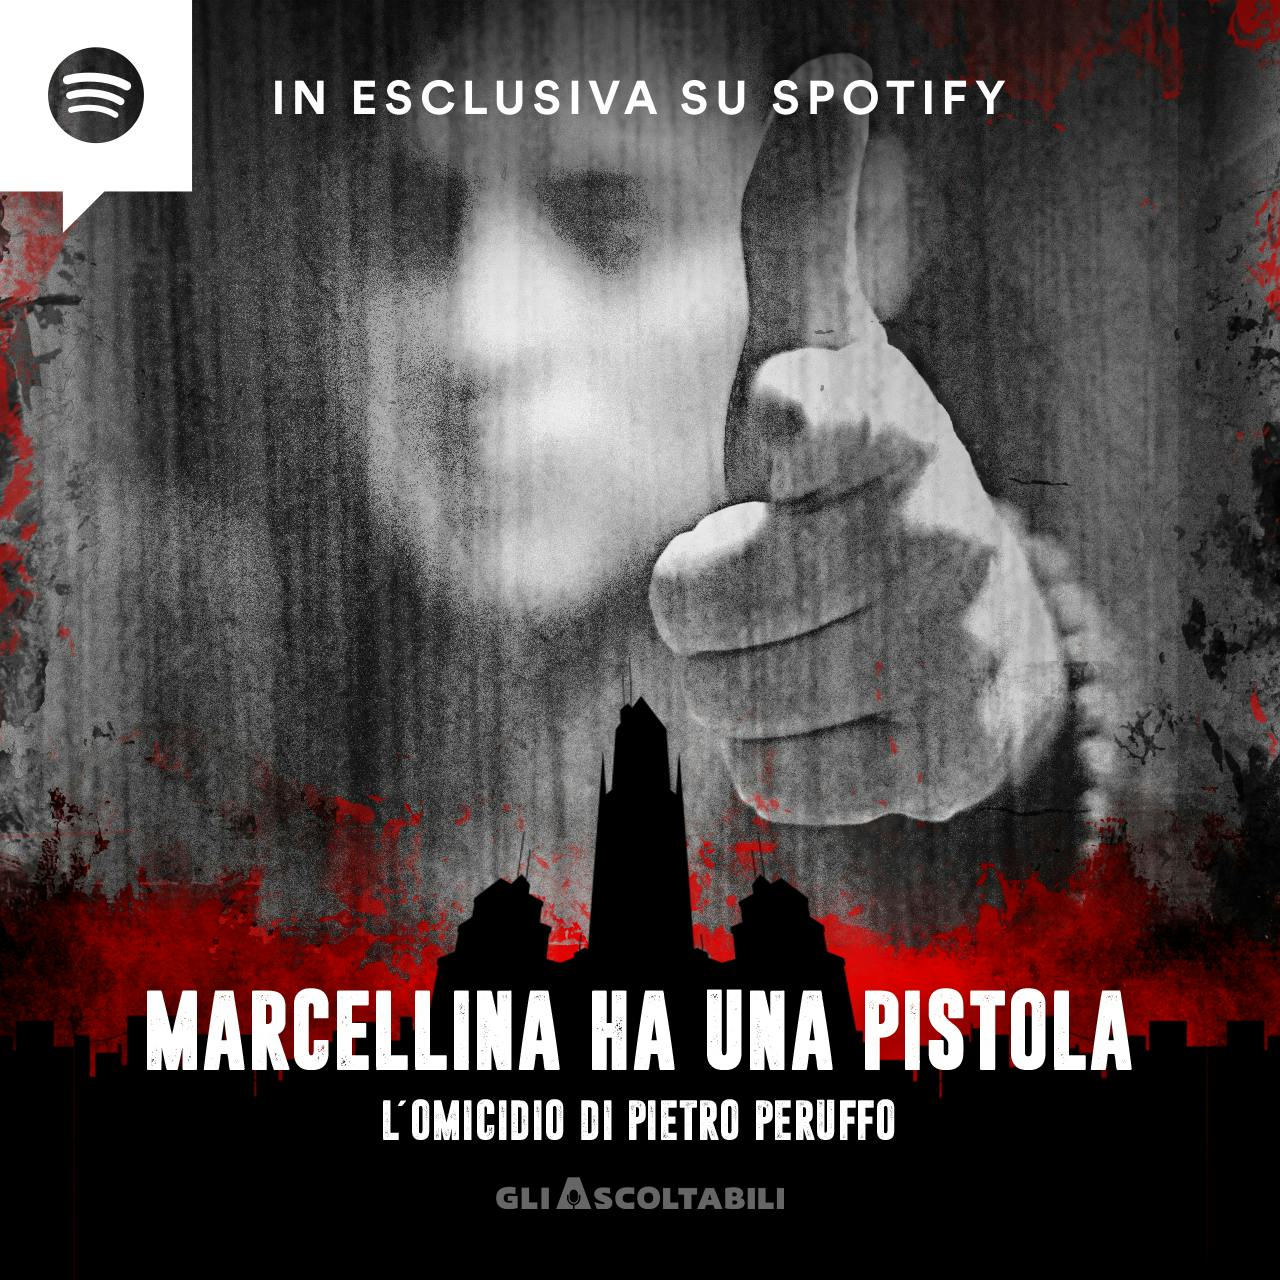 Marcellina ha una pistola - L’omicidio di Pietro Peruffo